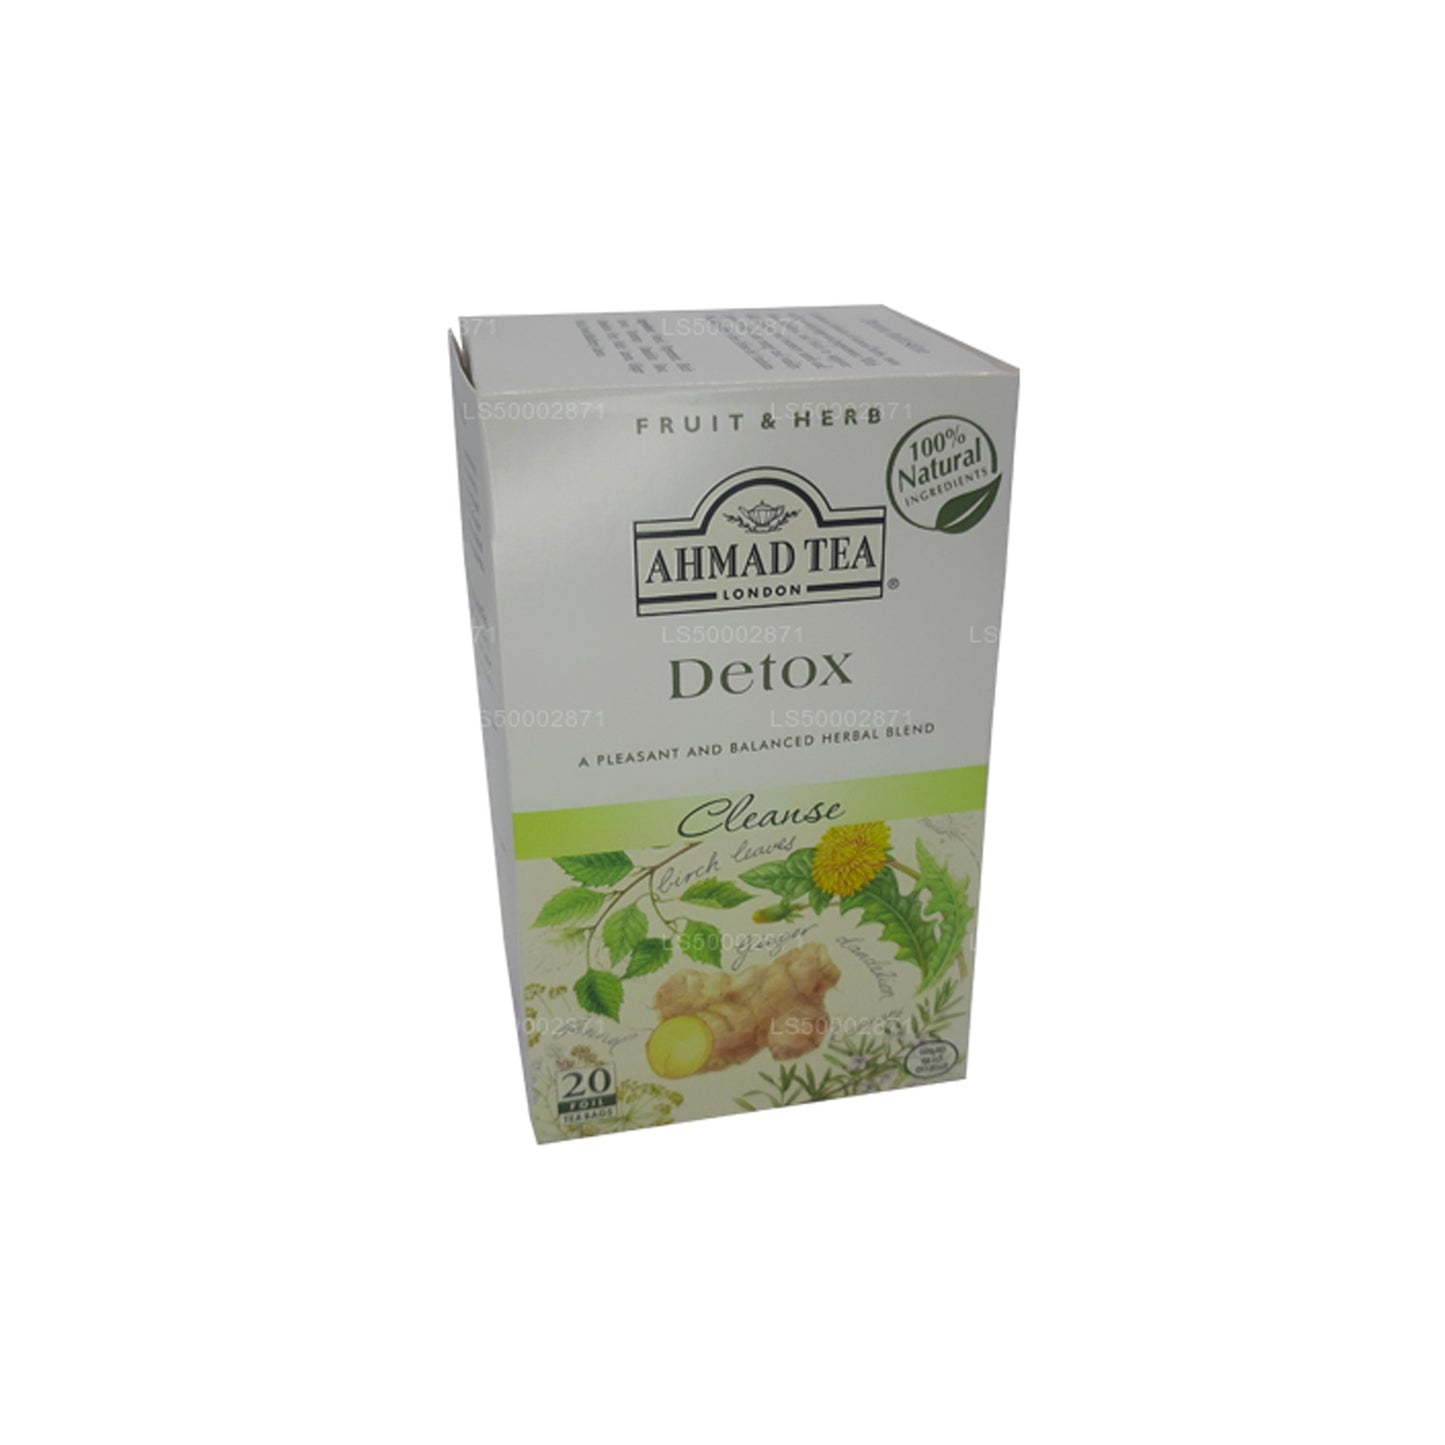 Ahmad Tea Detox Cleanse (20 tepose)